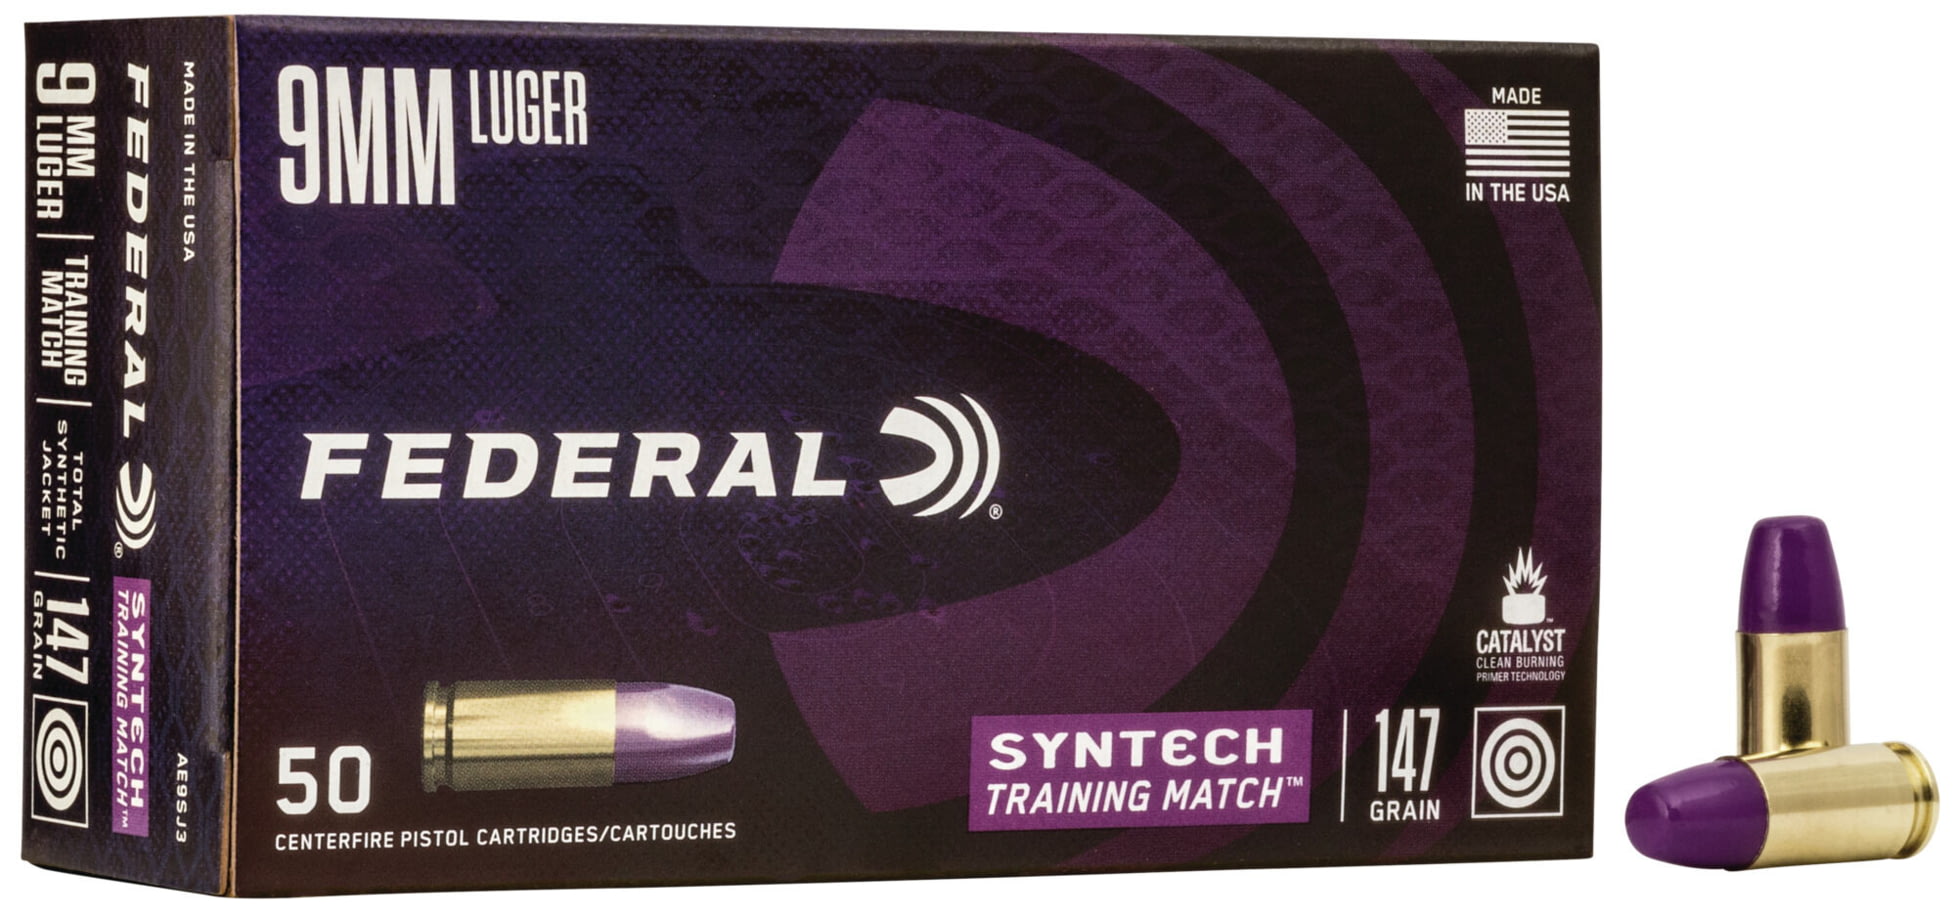 Federal Premium Centerfire Handgun Ammunition 9mm Luger 147 grain Syntech Total Synthetic Jacket Centerfire Pistol Ammunition